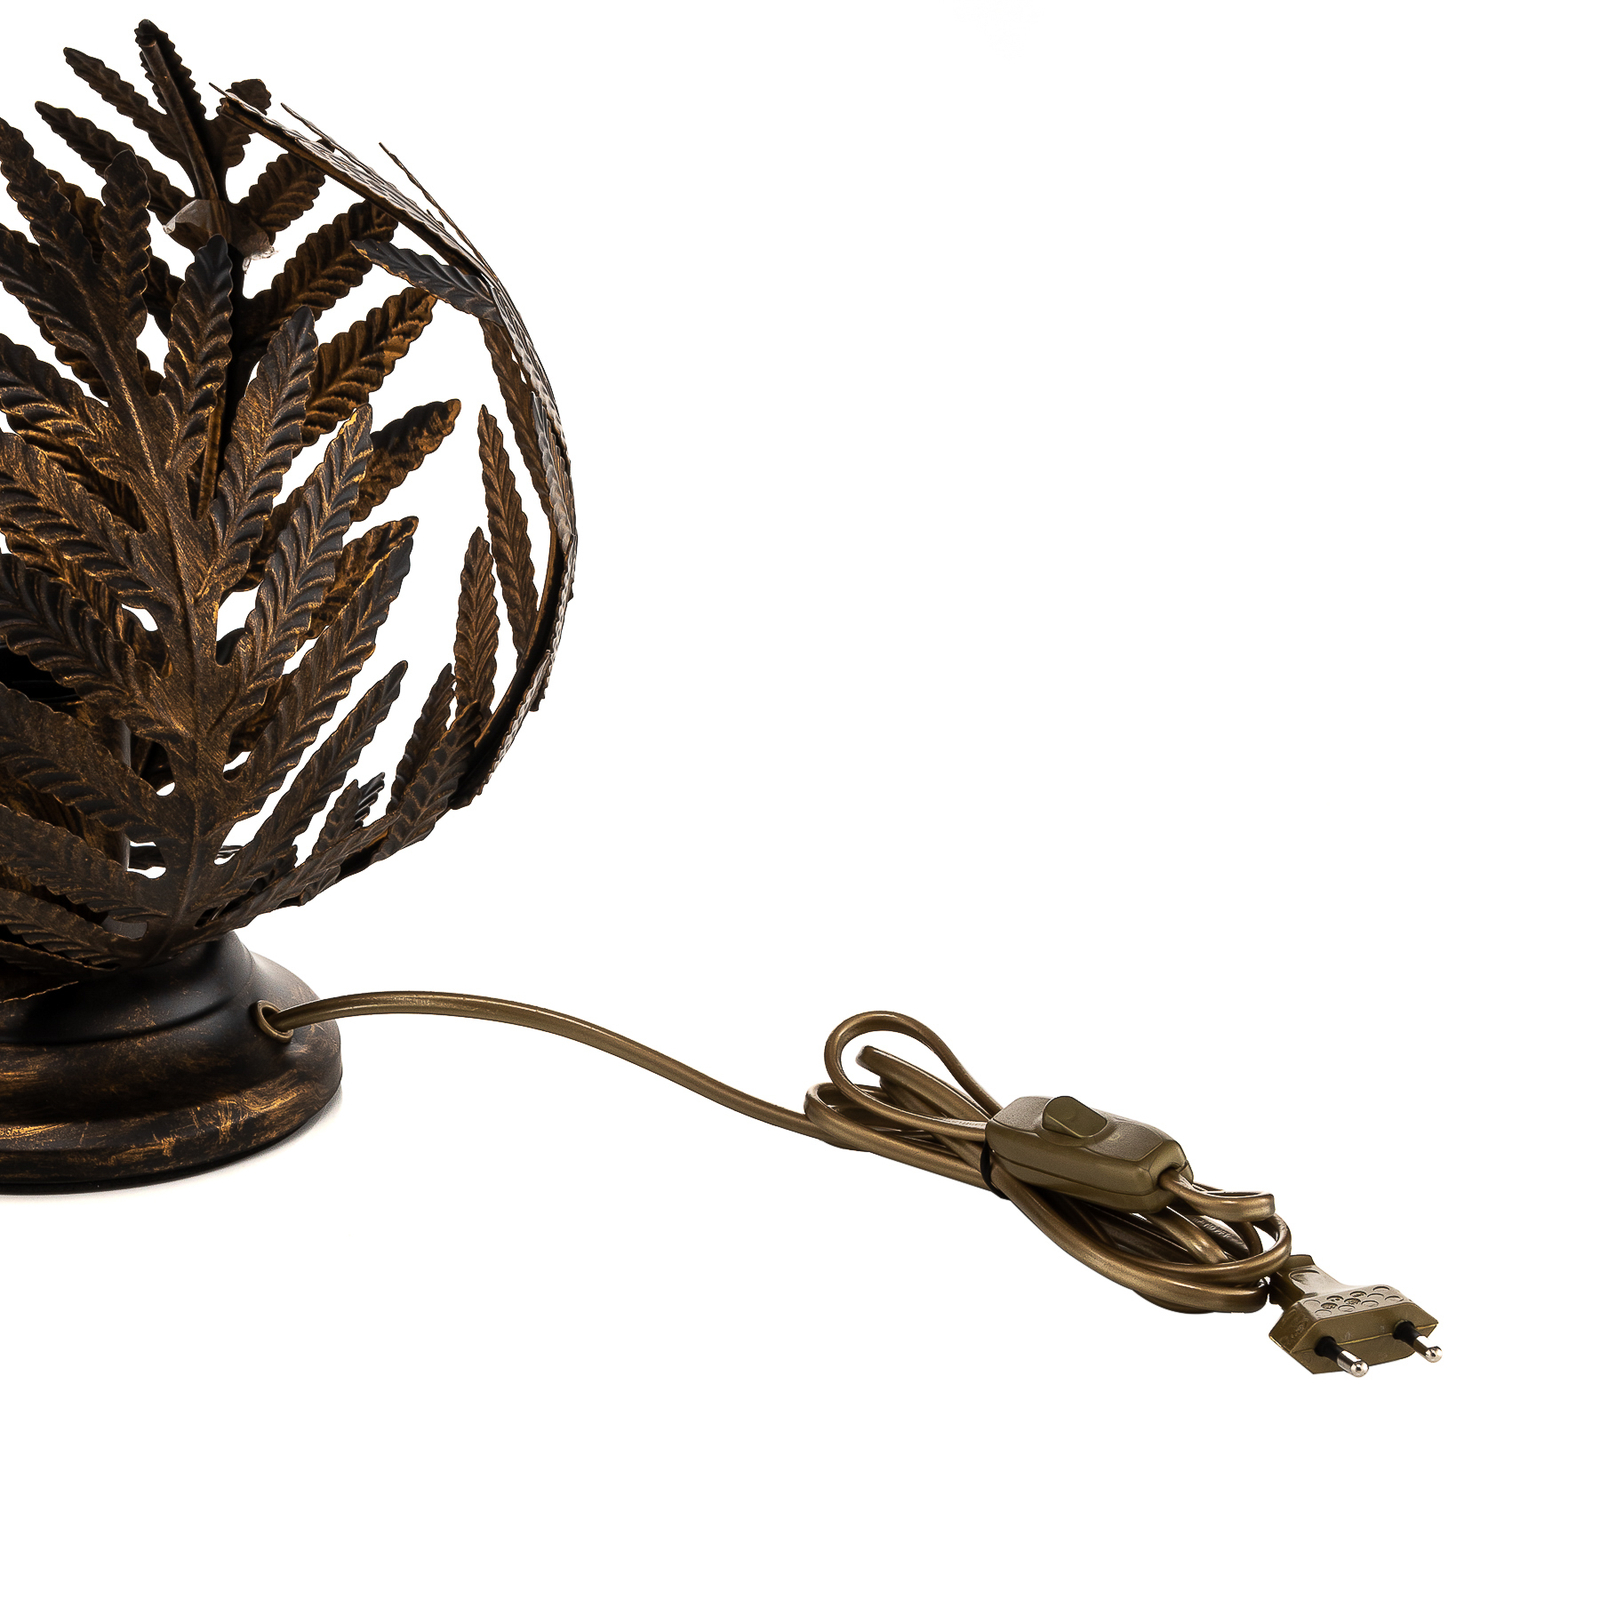 Stolná lampa Felce ako papradie v bronzovej, 24 cm